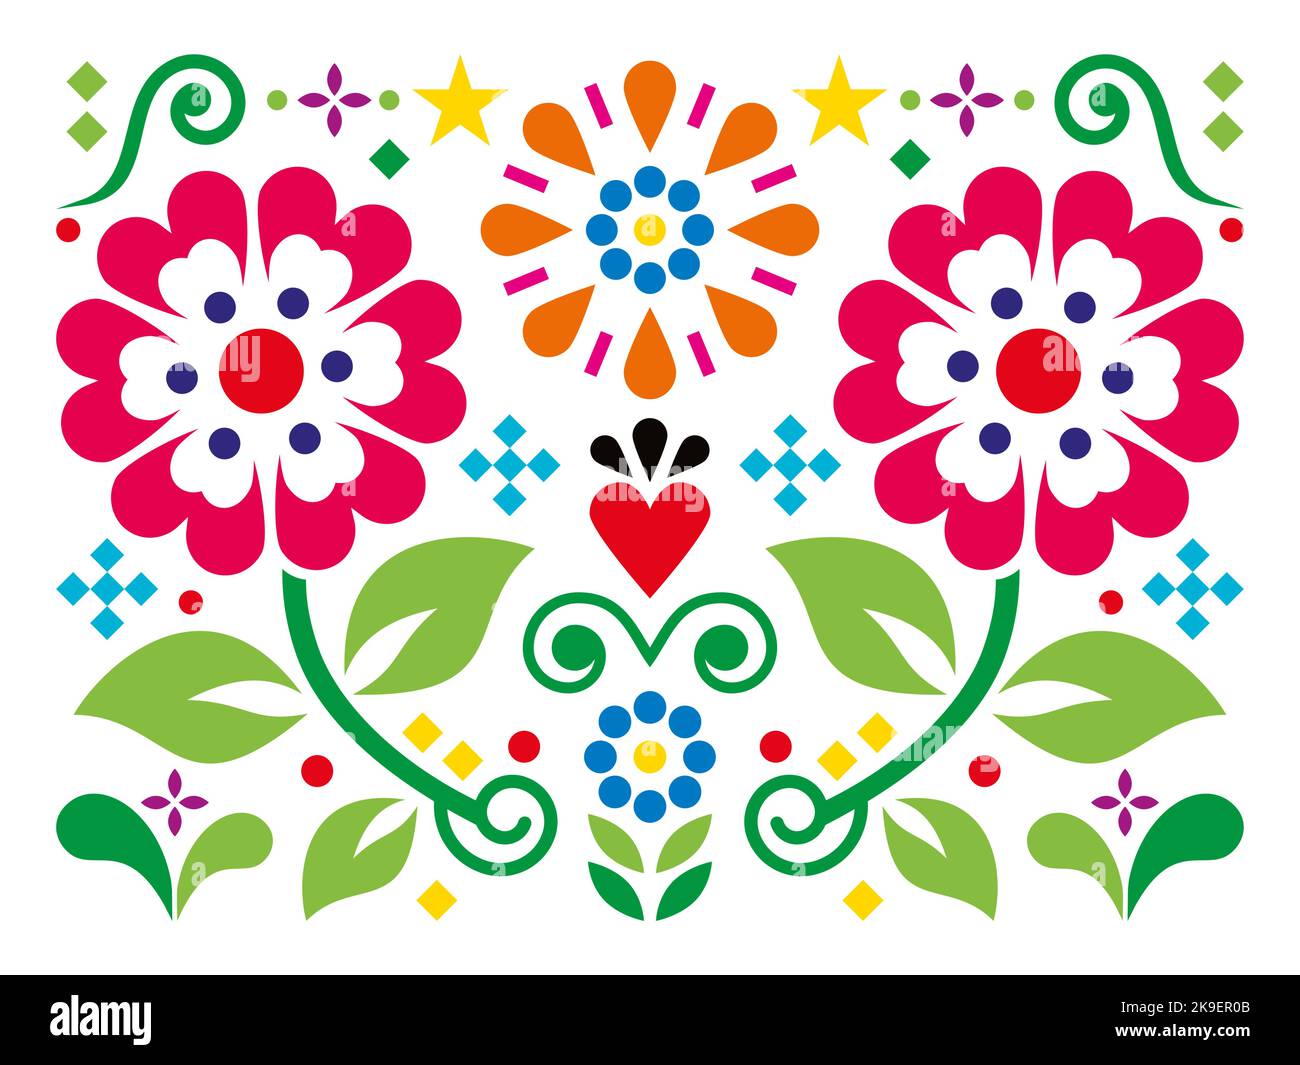 Biglietto d'auguri di stile messicano folkloristico o design d'invito con cuore, fiori e foglie Illustrazione Vettoriale